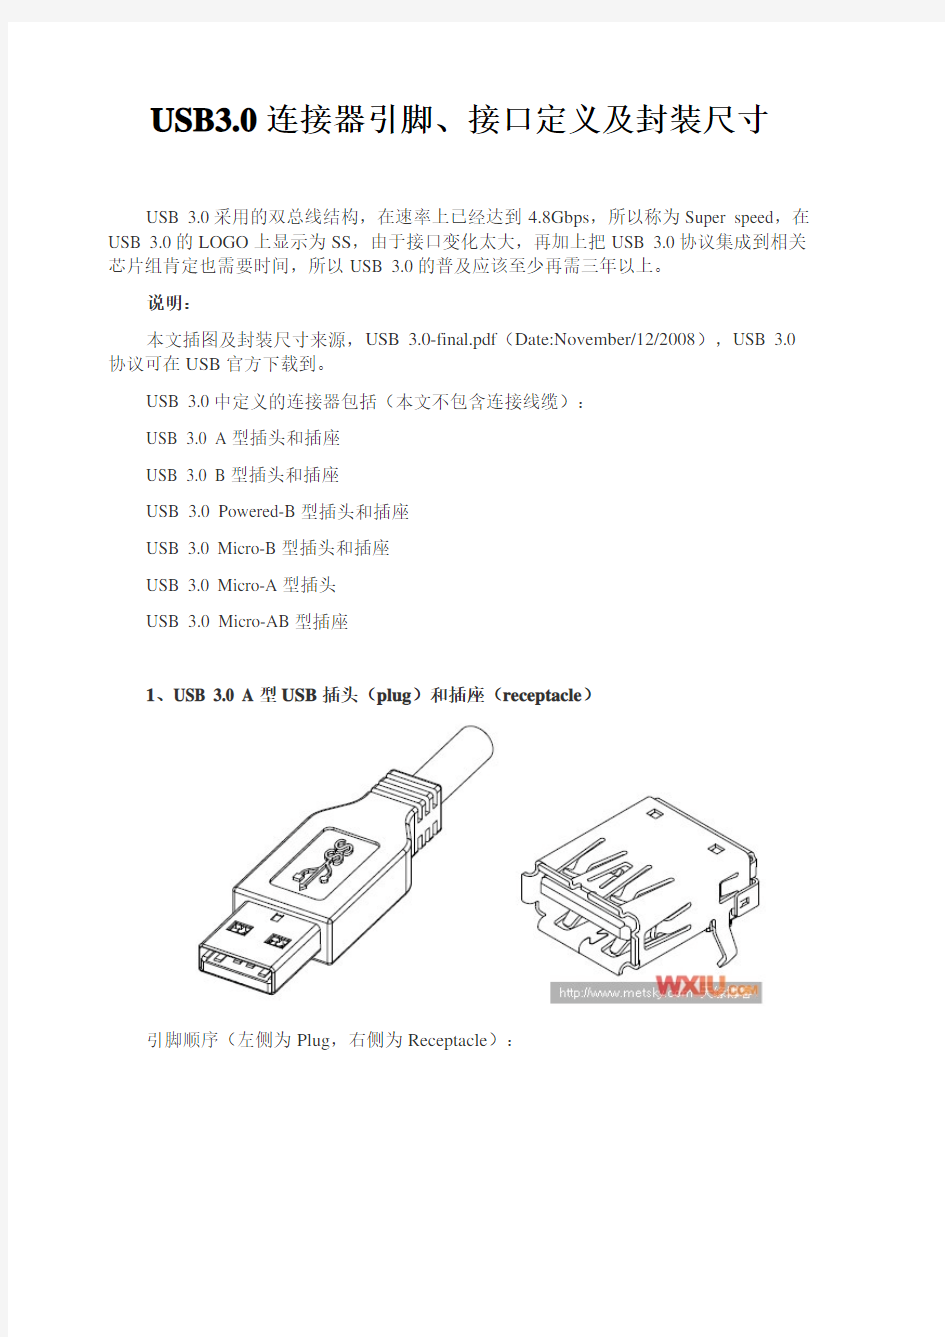 USB3.0连接器引脚、接口定义及封装尺寸